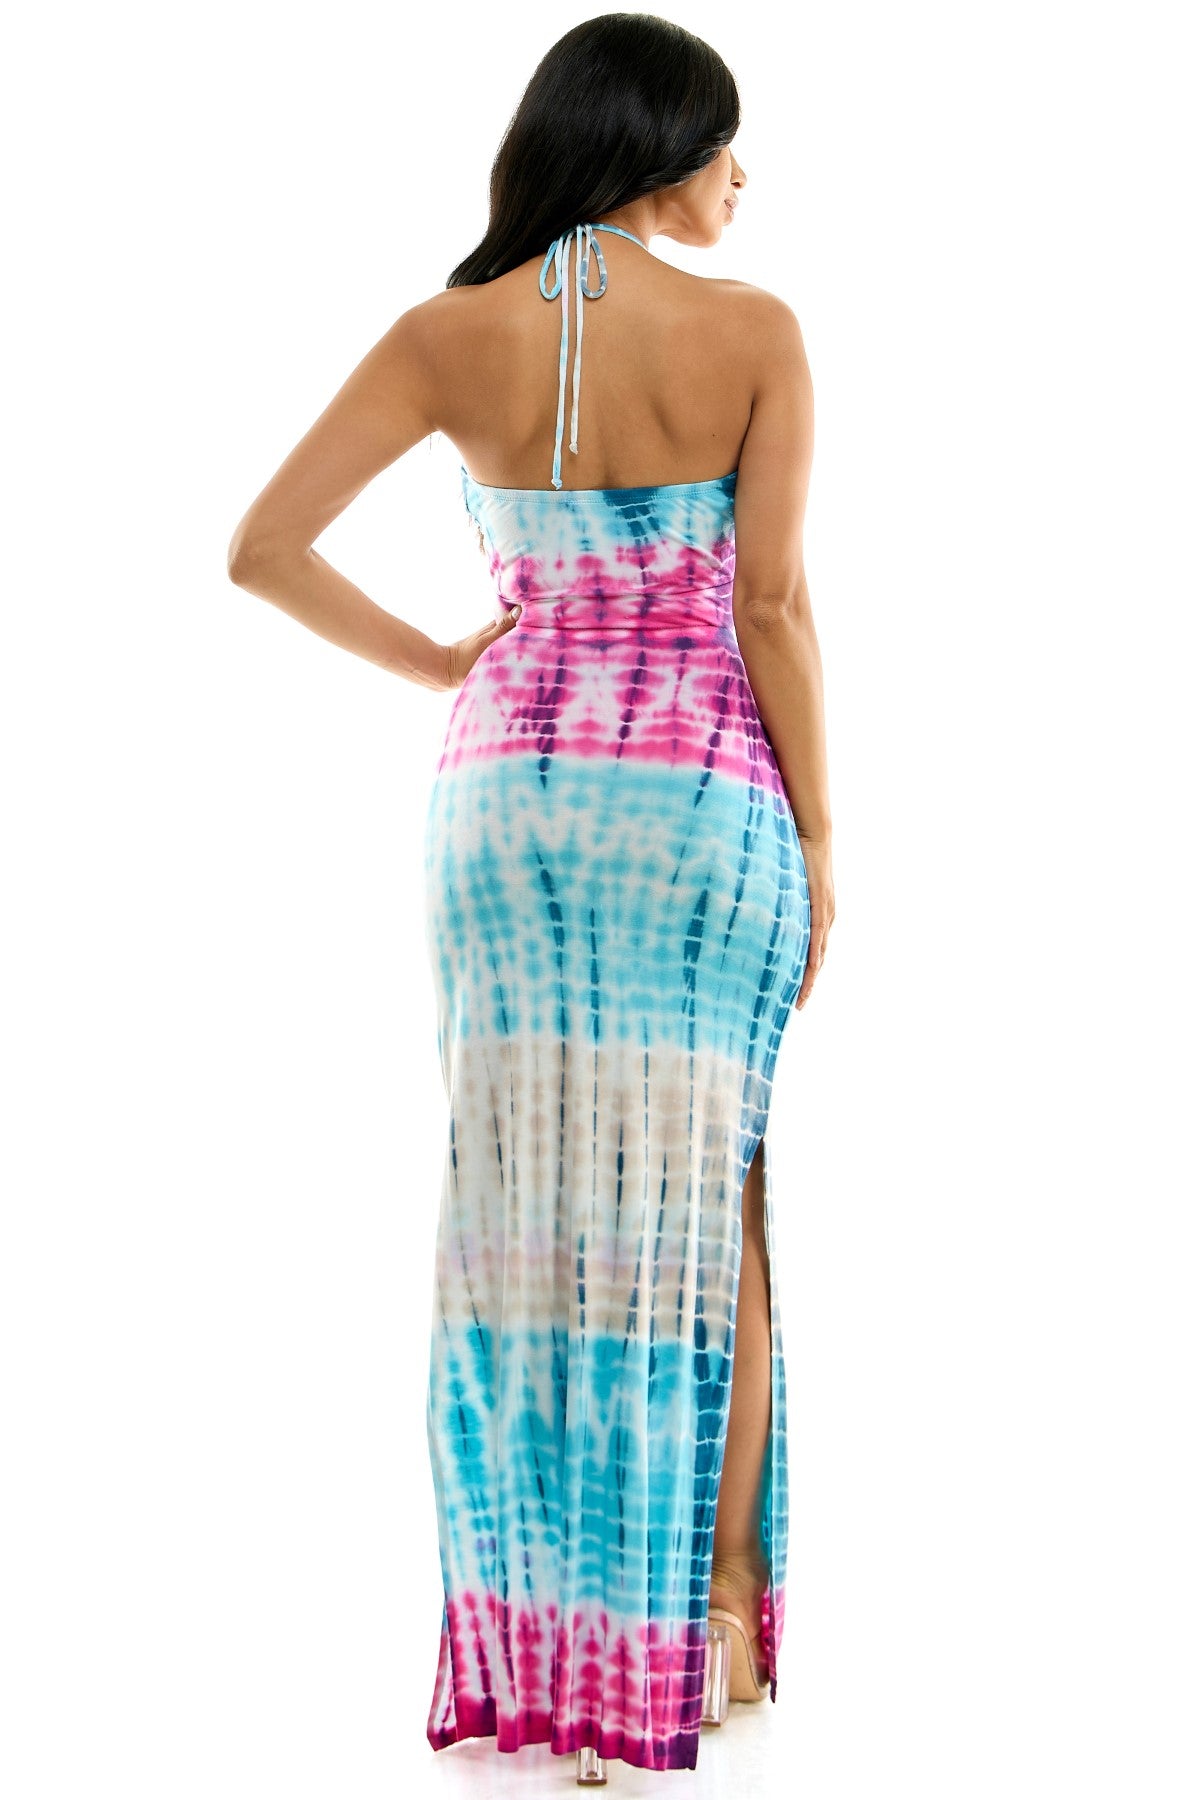 Elegant Lace Up Front Halter With Side Slit Maxi Dress